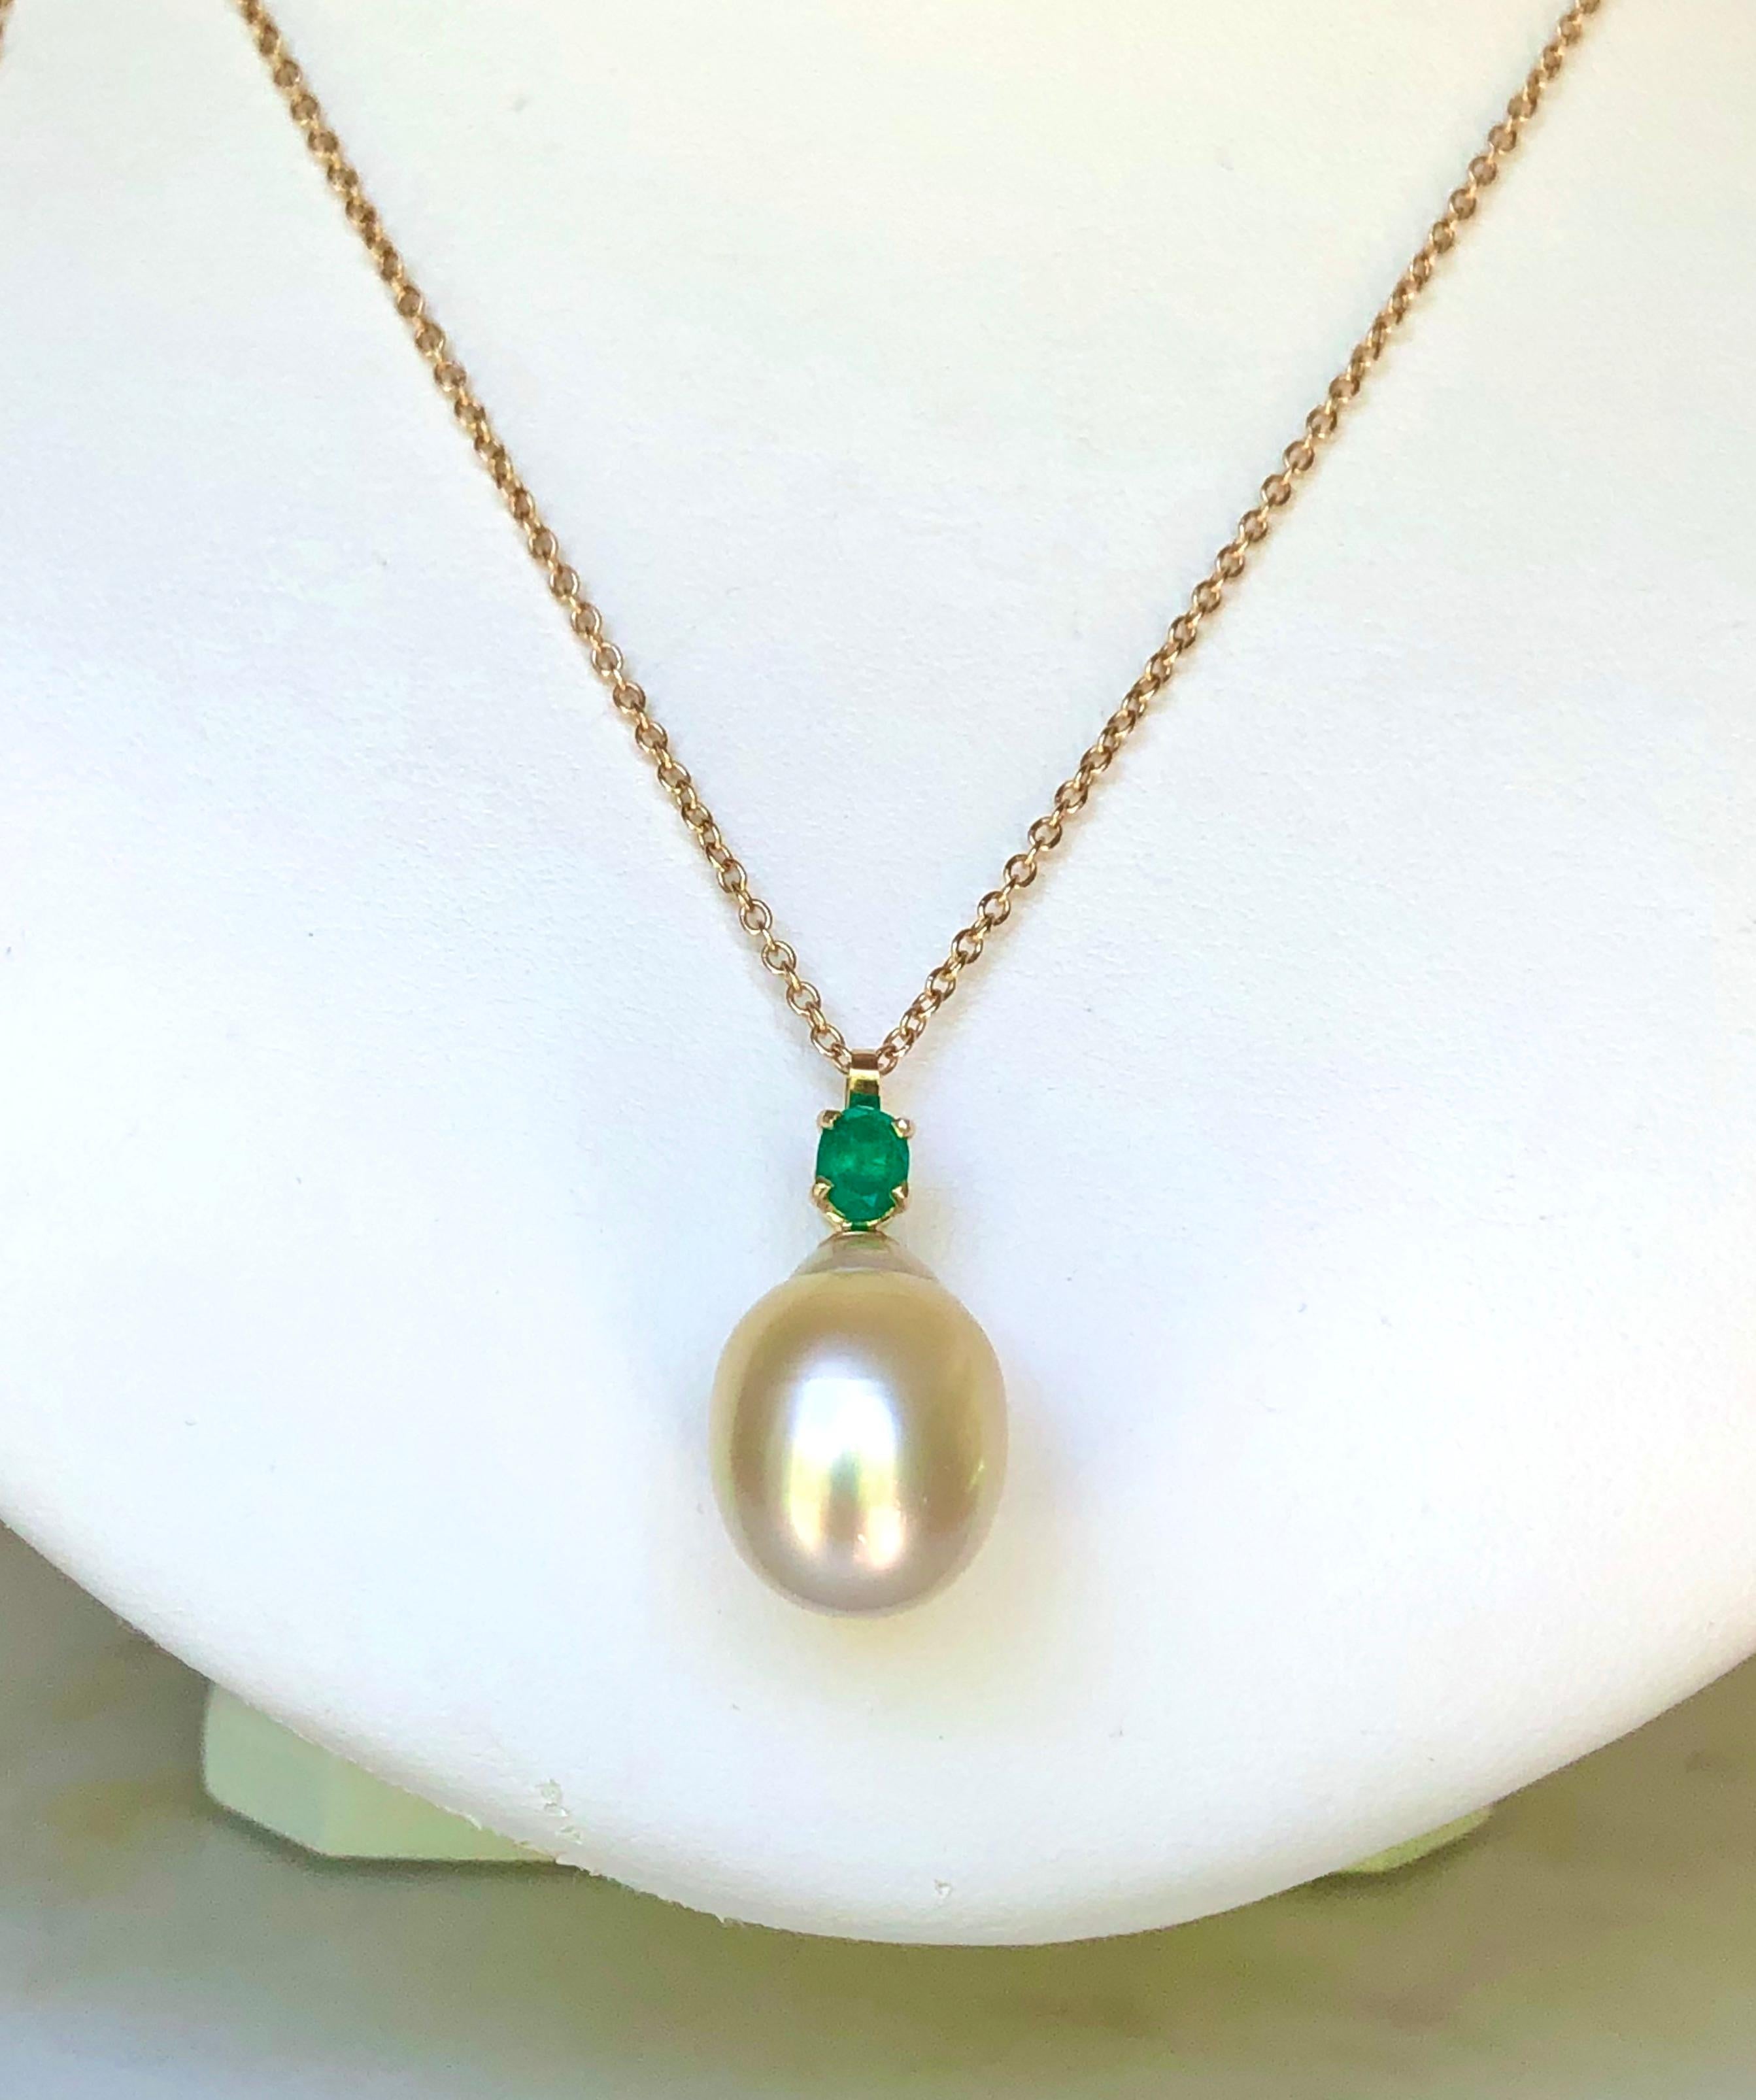 Oval Cut Emerald South Sea Pearl Pendant Necklace 18 Karat